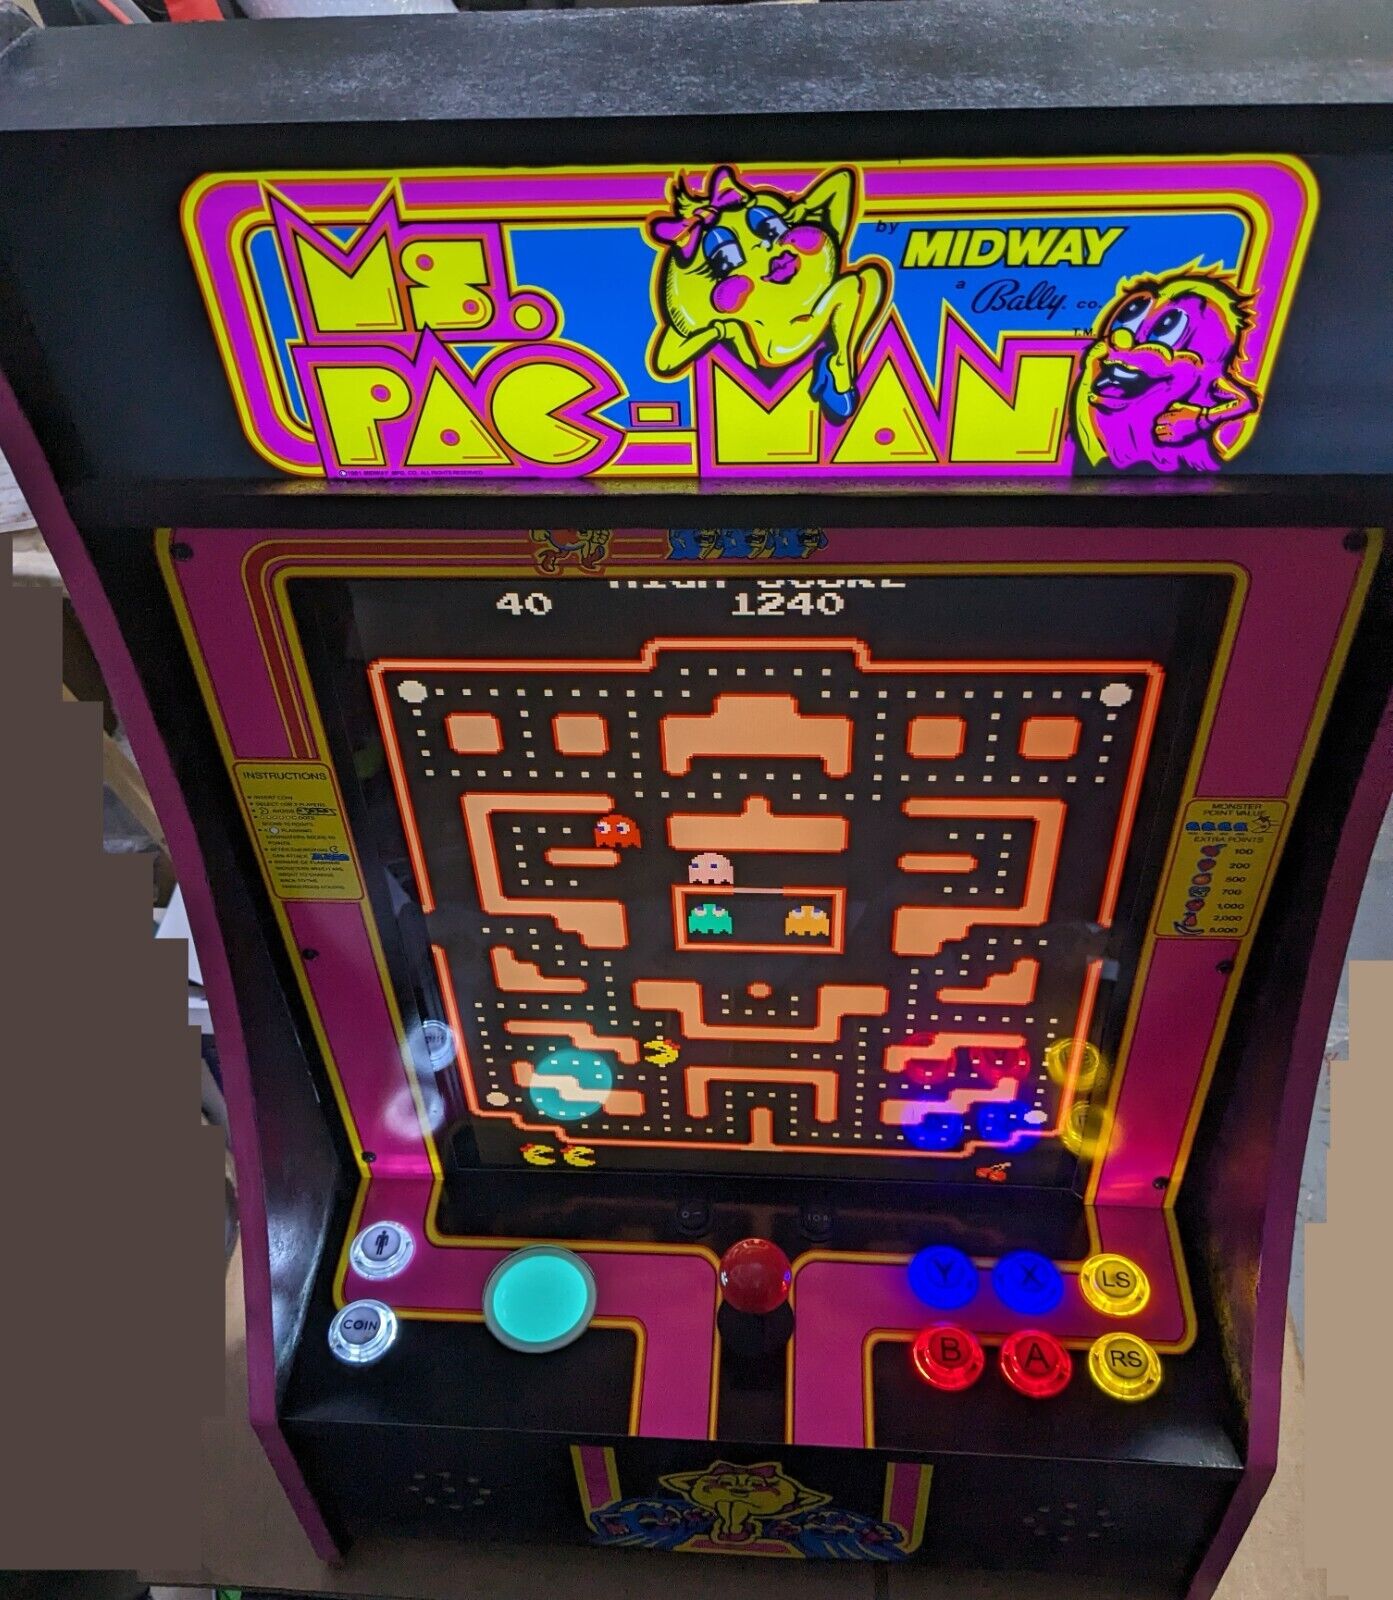 Arcade Arcade1up Ms. PacMan upgraded PartyCade with 19\